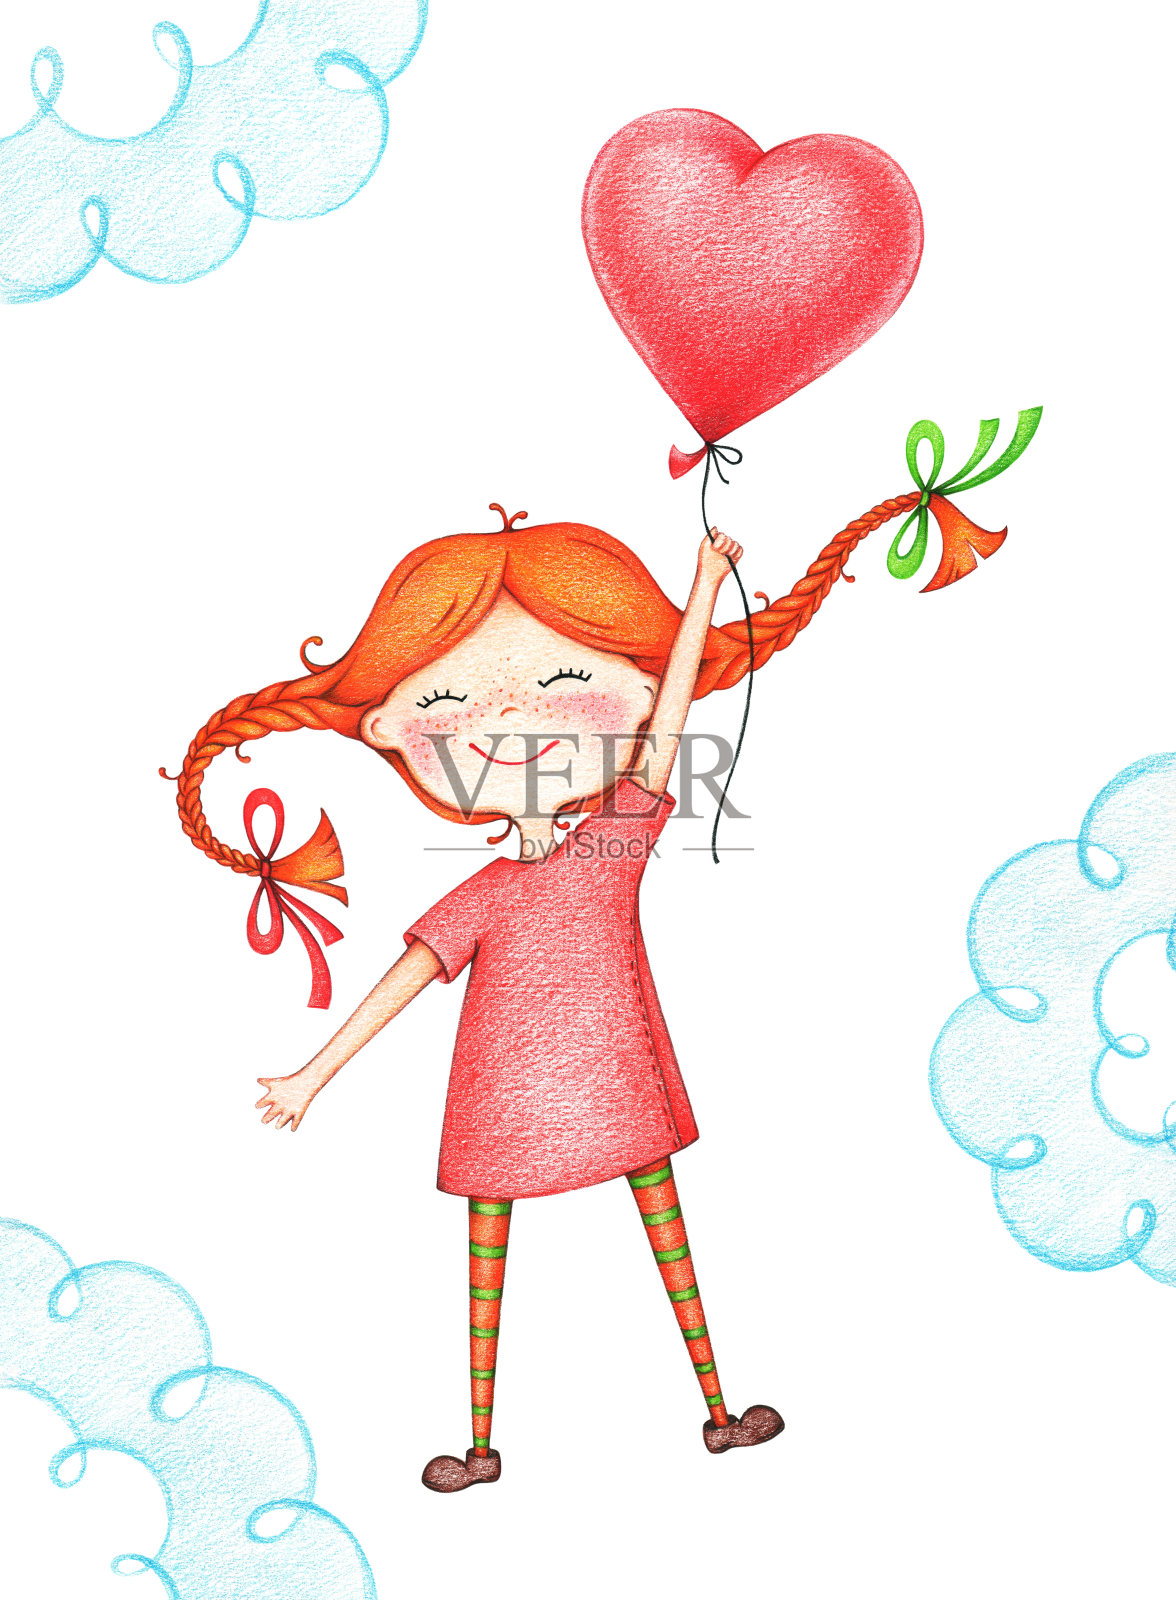 用彩色铅笔手绘了一幅小朋友拿着红气球飞翔的图画插画图片素材